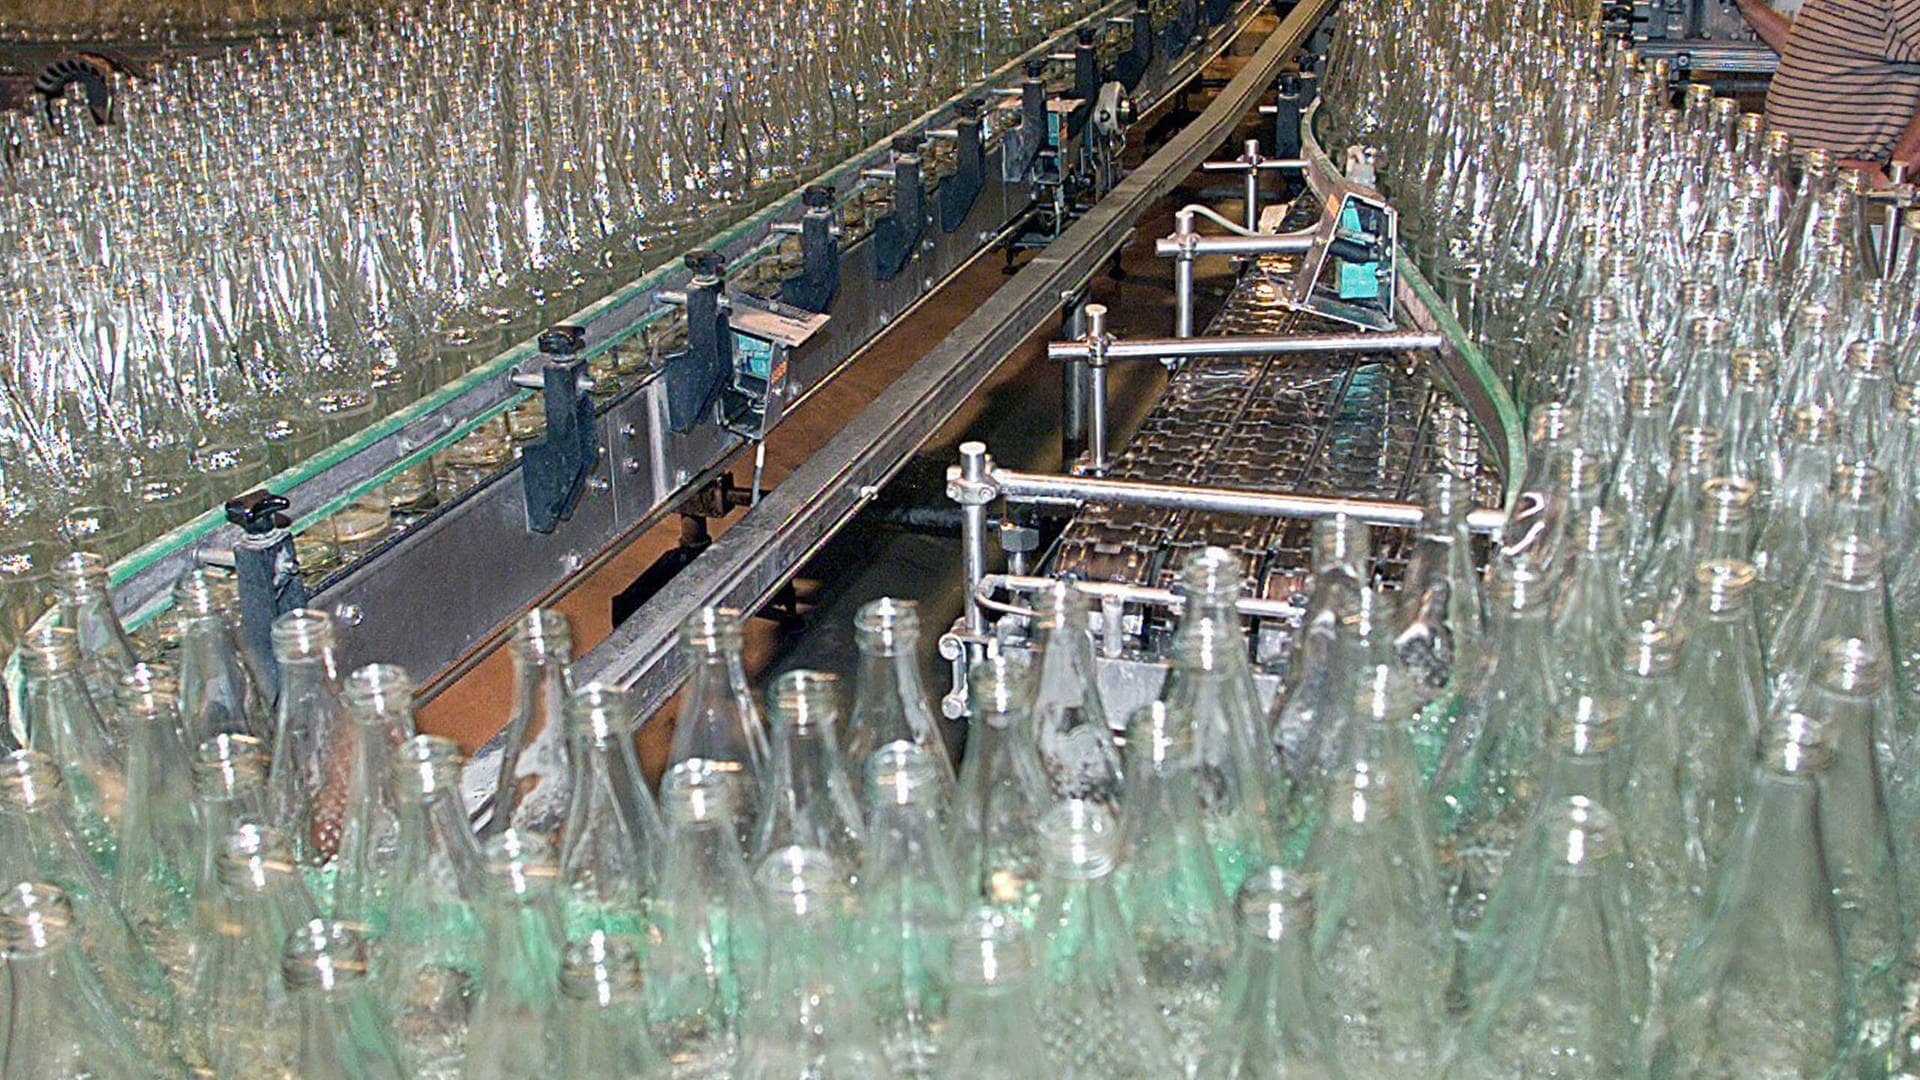 Mineralwasser in Glasflaschen haben keine besonders gute Klimabilanz. (Foto: dpa Bildfunk, Harry_Melchert)